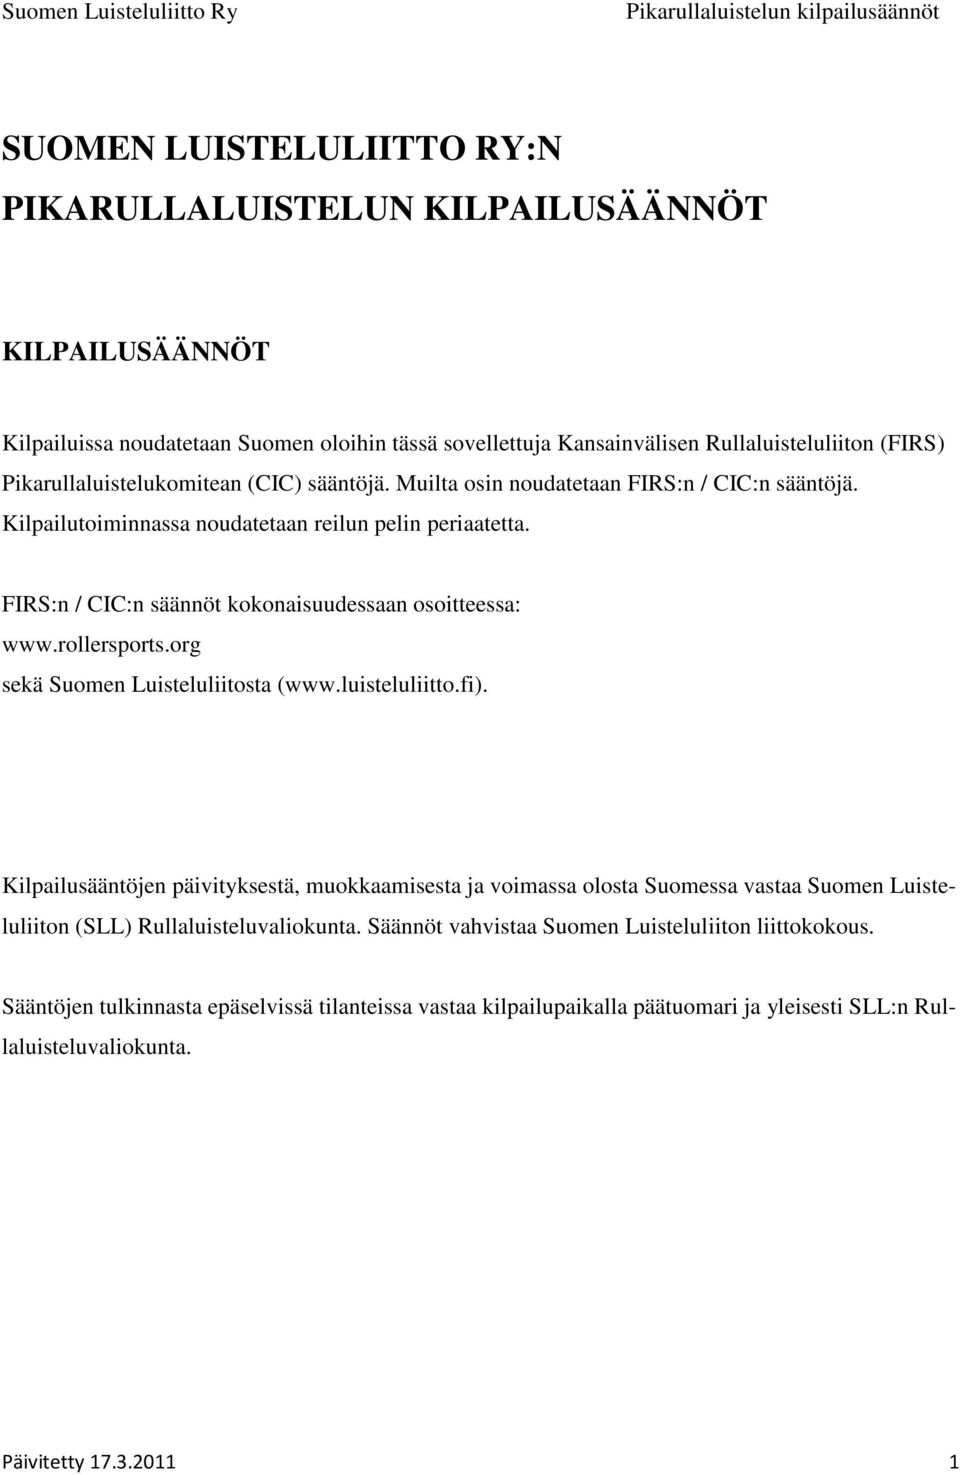 FIRS:n / CIC:n säännöt kokonaisuudessaan osoitteessa: www.rollersports.org sekä Suomen Luisteluliitosta (www.luisteluliitto.fi).